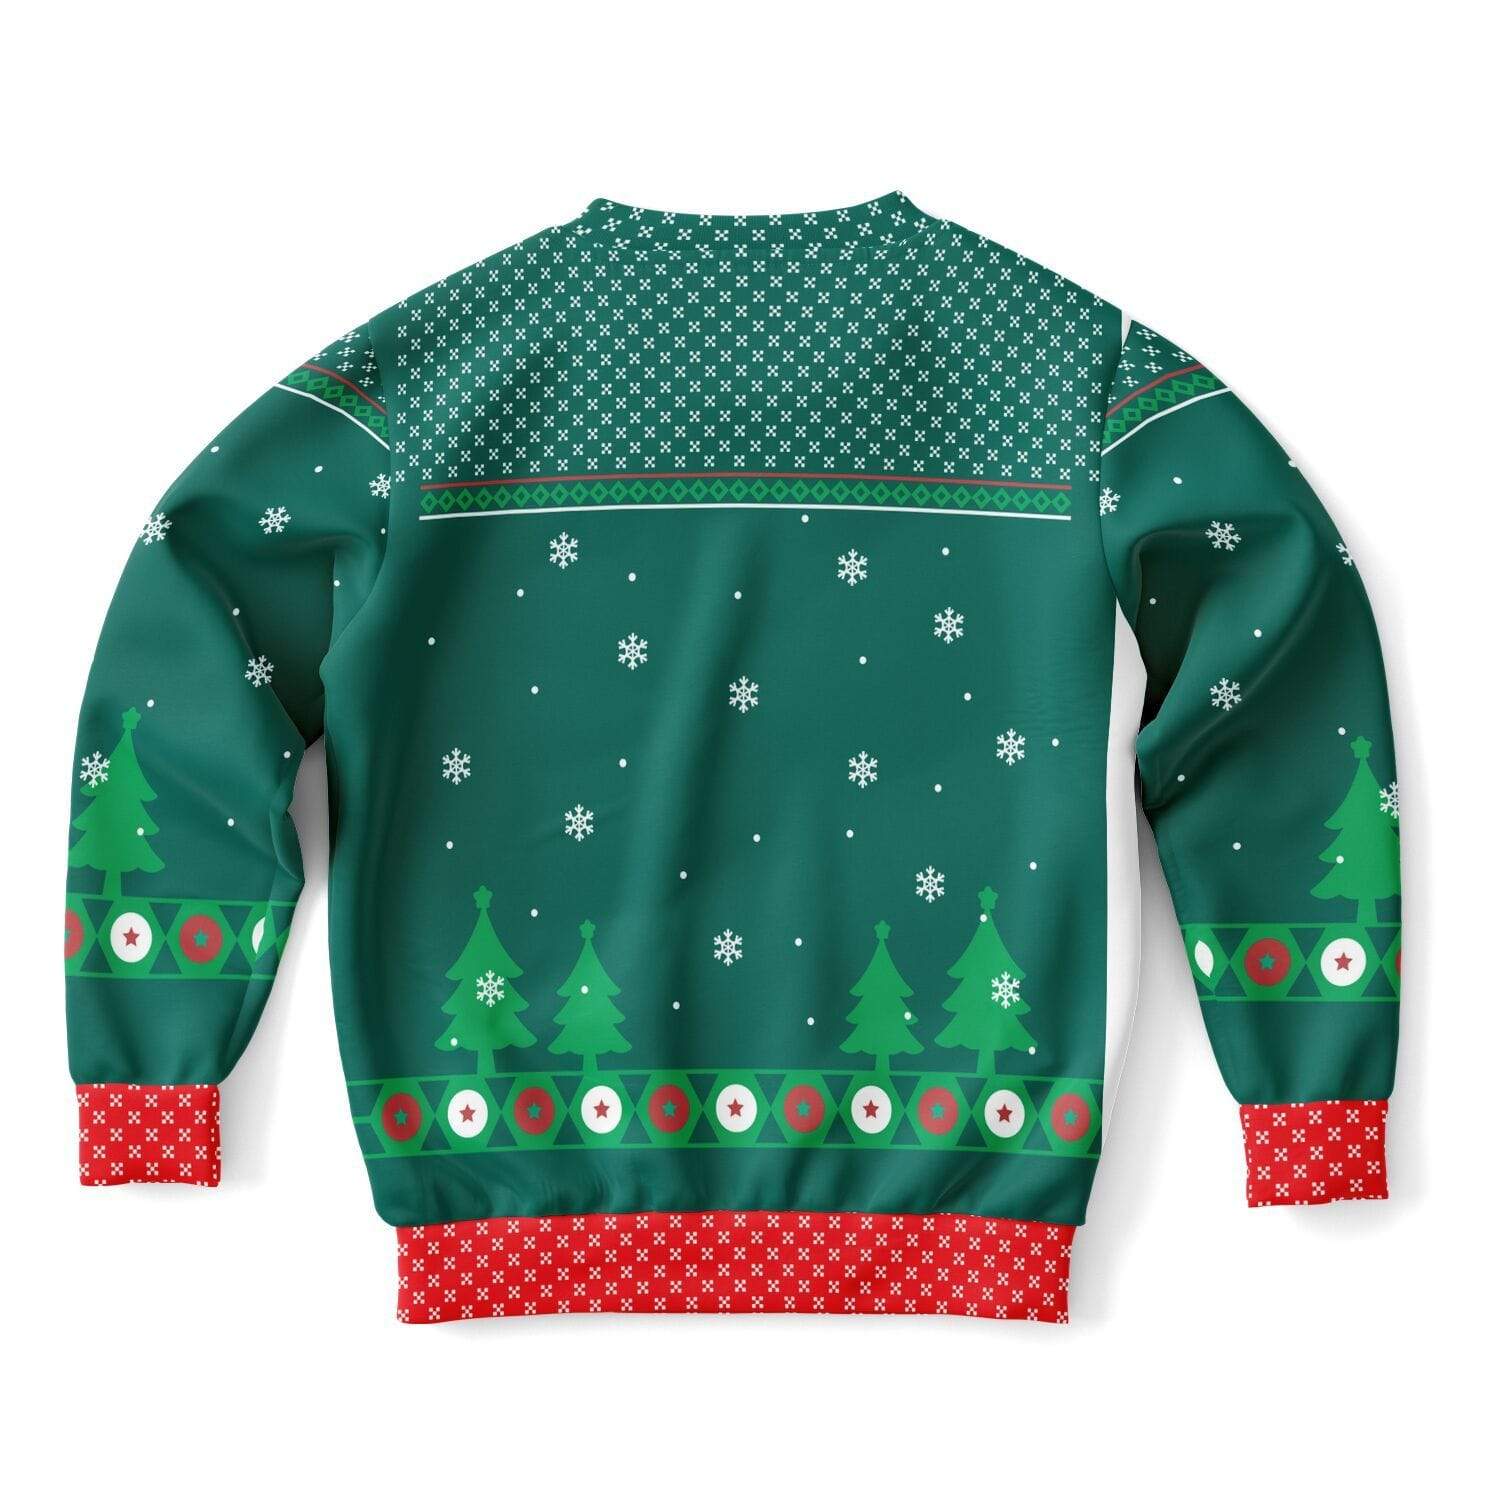 I'm the Ninja Elf - Funny Kids/Youth Ugly Christmas Sweater (Sweatshirt)